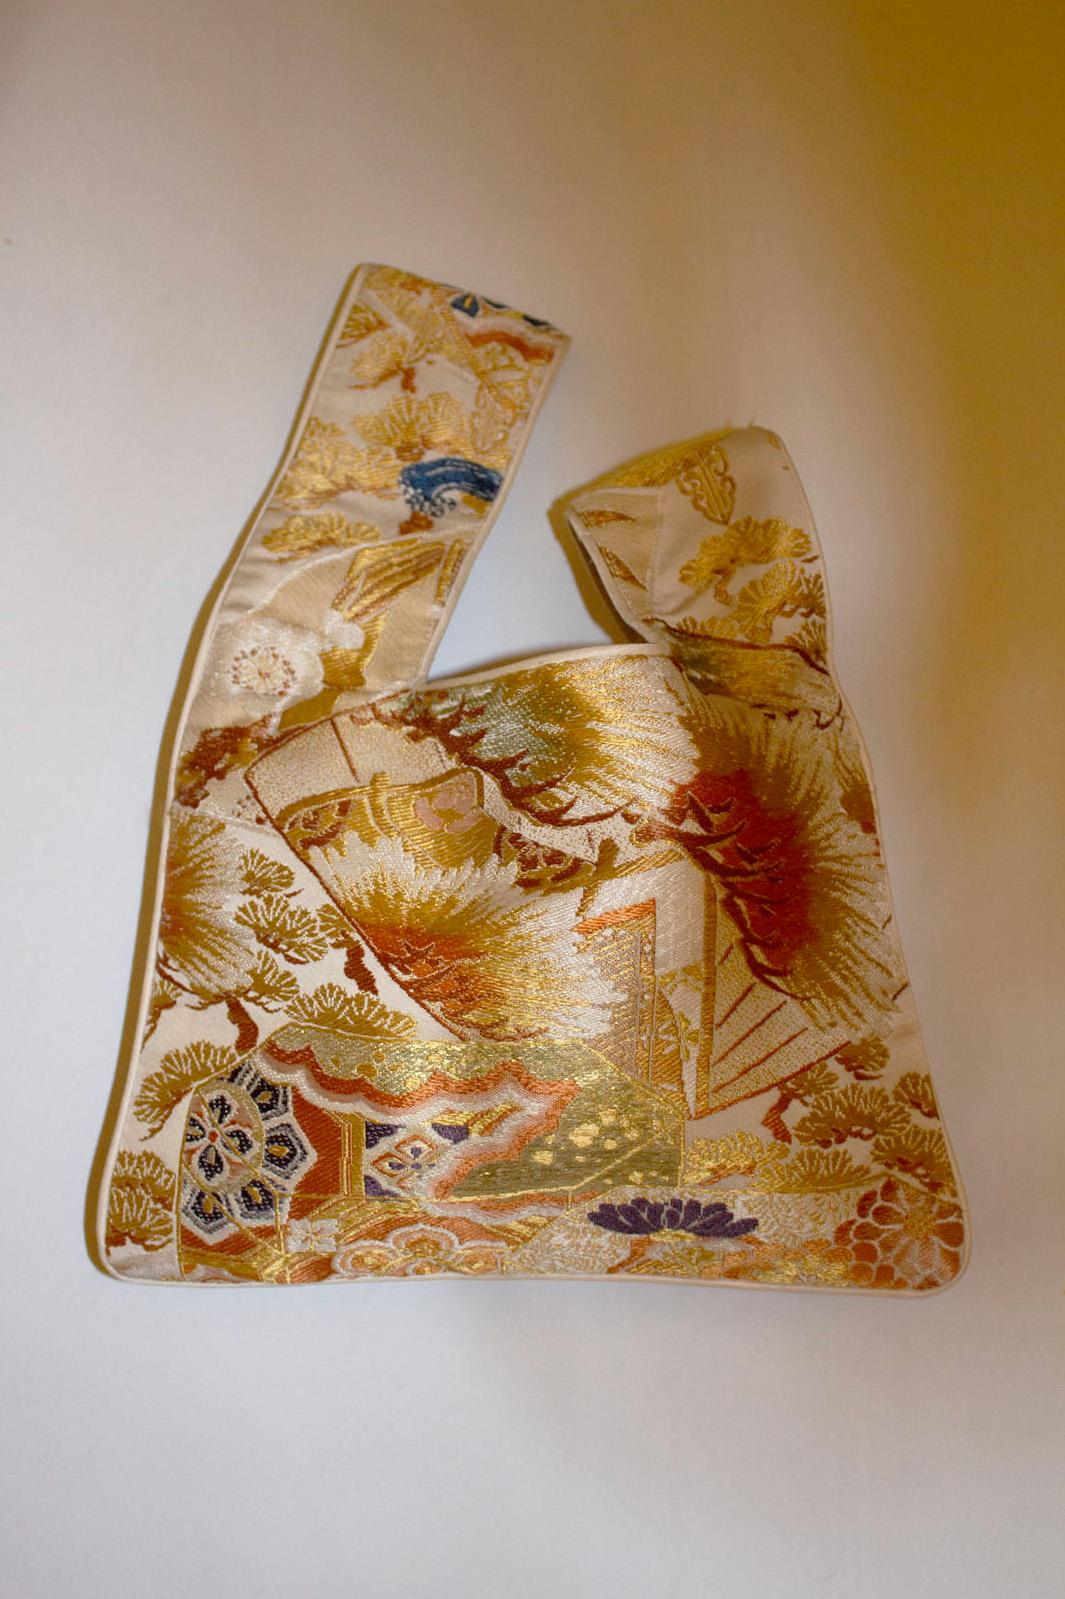 Eine hübsche gold-, orange- und lilafarbene Tasche mit weißer Paspel, hergestellt aus seltenen alten Obi-Gürteln.
Die Griffe schlüpfen ineinander. Die Tasche ist gefüttert. Maße: Breite 12'' x Höhe 9''
